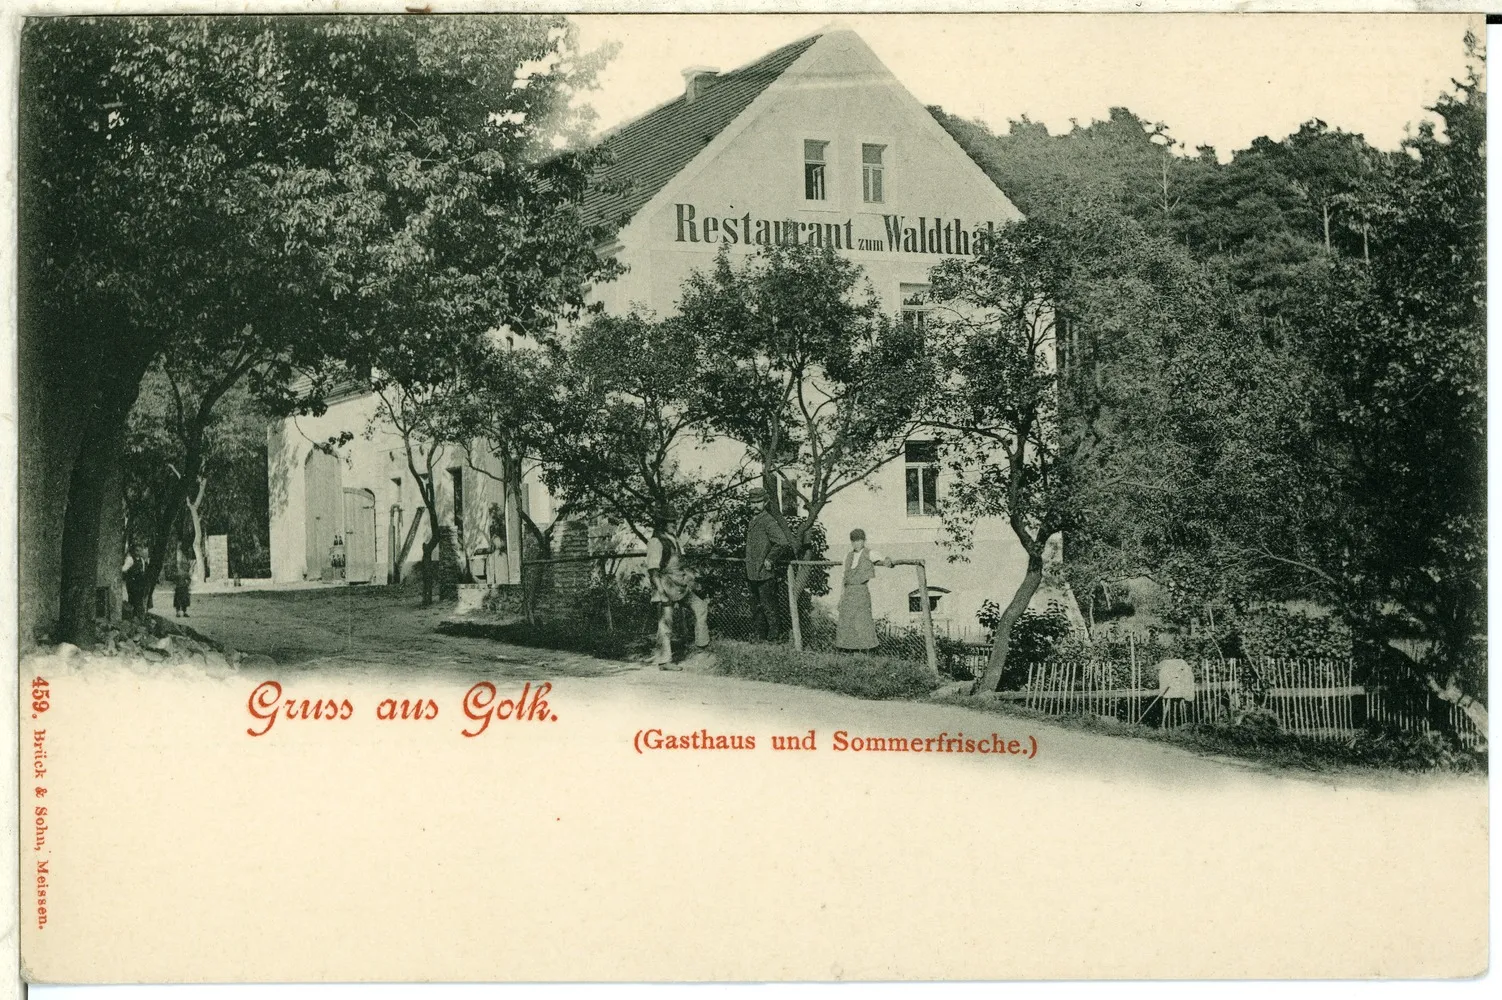 Photo showing: Golk; Restaurant zum Waldthal